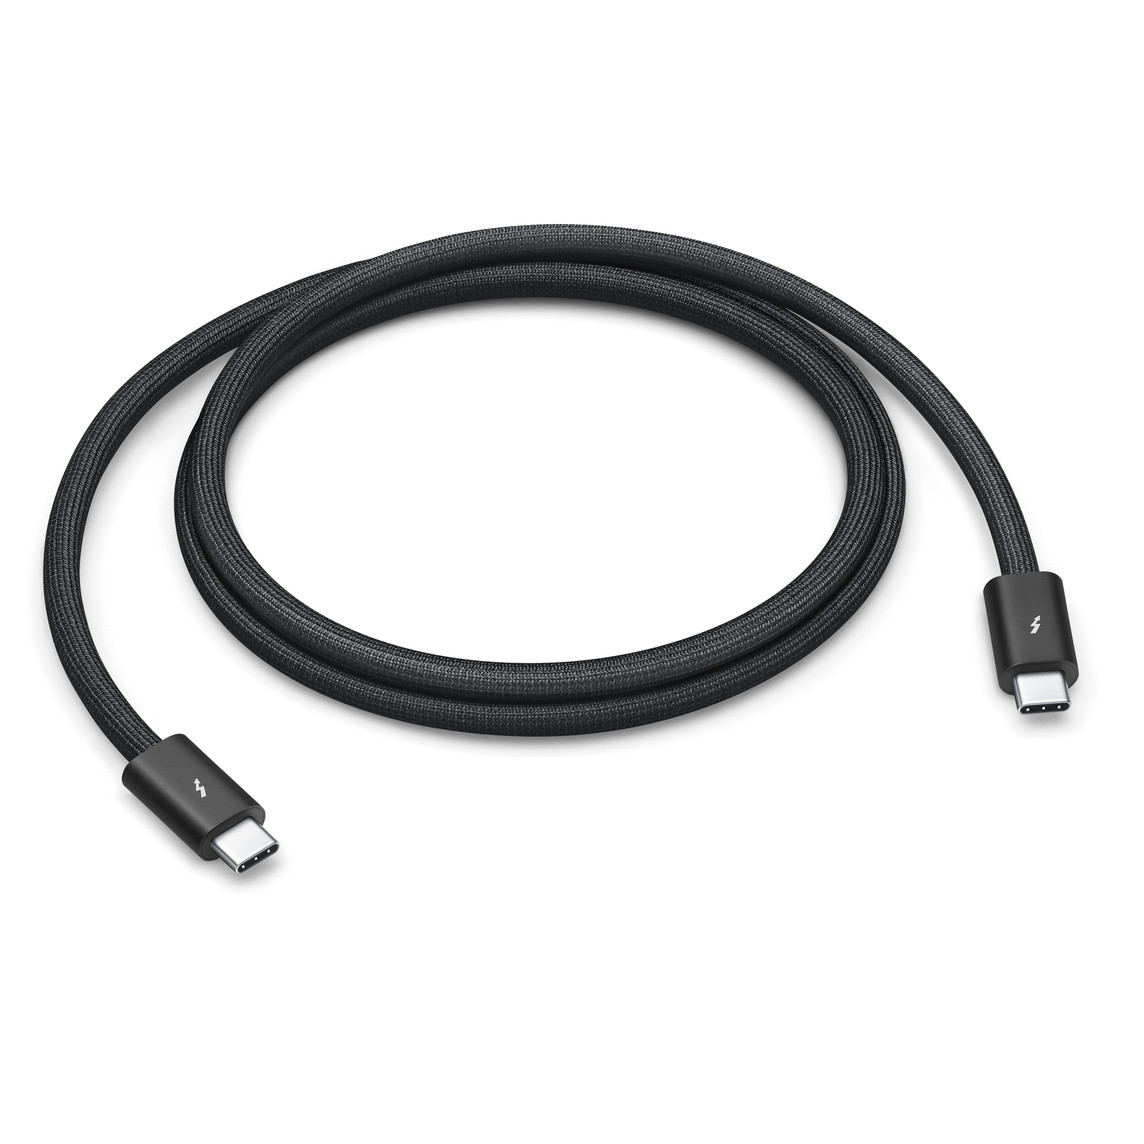 Zwarte gevlochten Thunderbolt 4 Pro-kabel van 1 meter die je kunt oprollen zonder dat hij in de knoop raakt. Via deze kabel kun je gegevens overzetten met een snelheid tot 40 gigabyte per seconde.